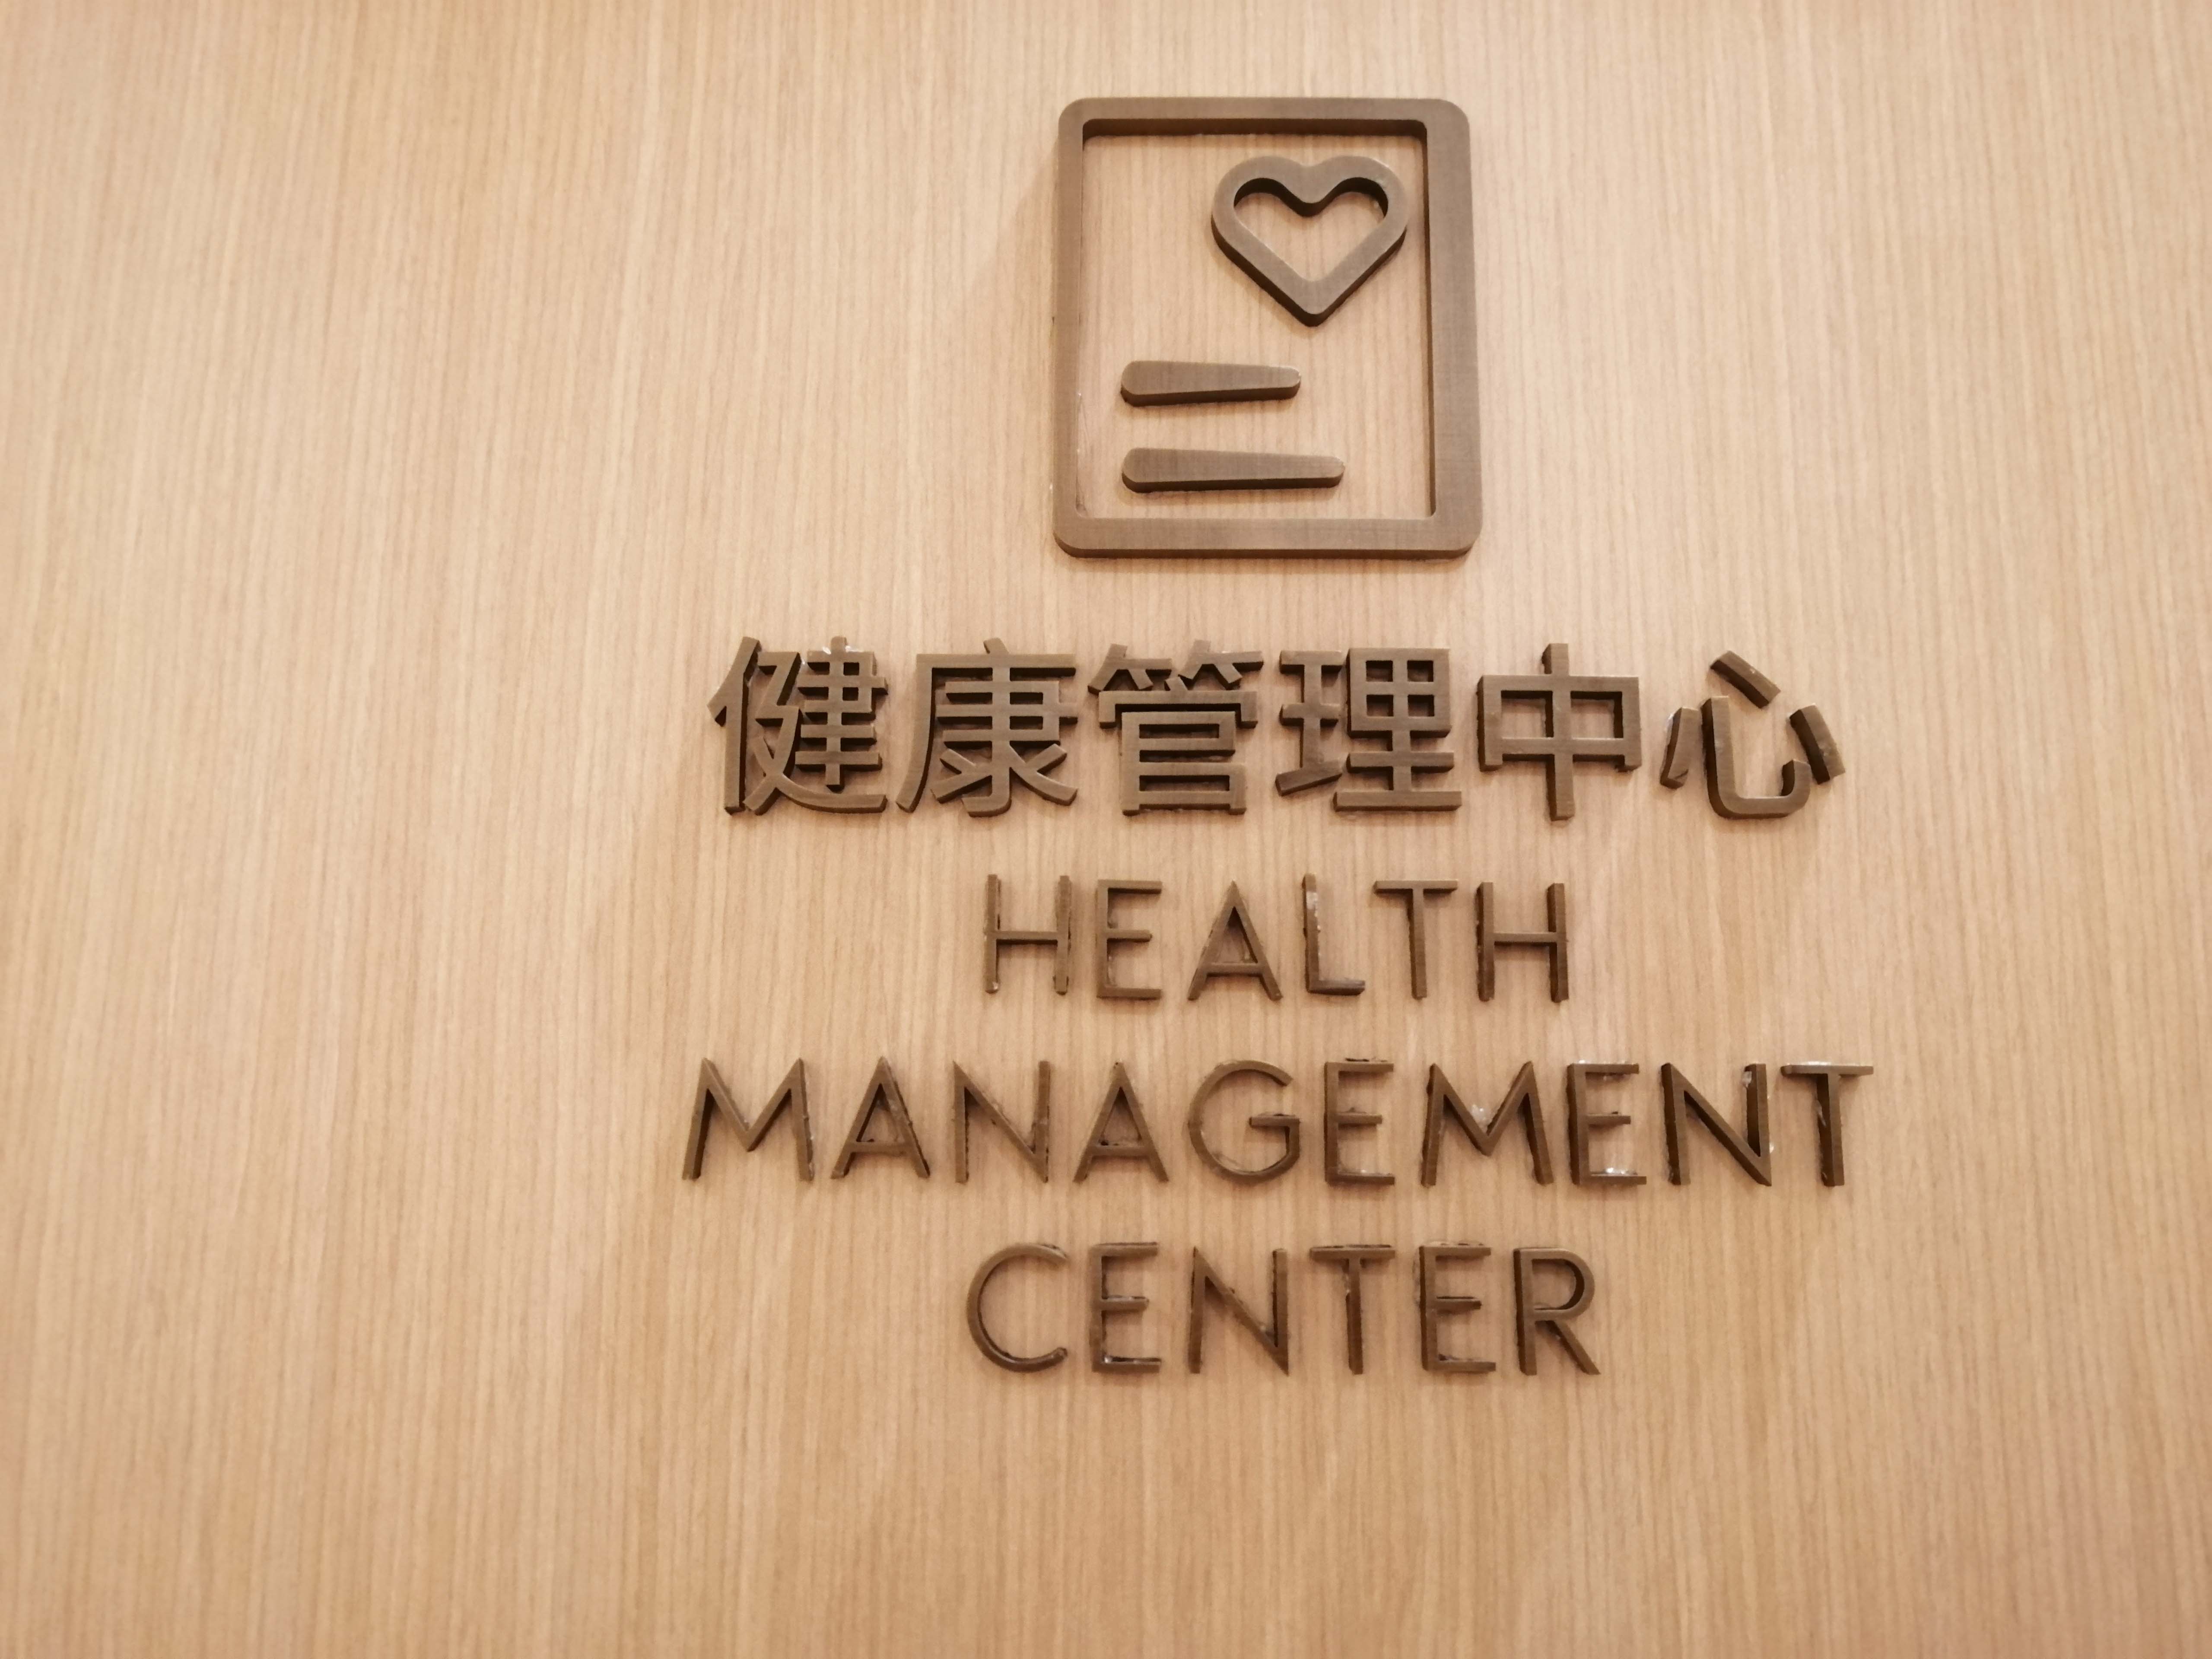 鸿泰盛步态分析系统进驻三亚健康管理中心